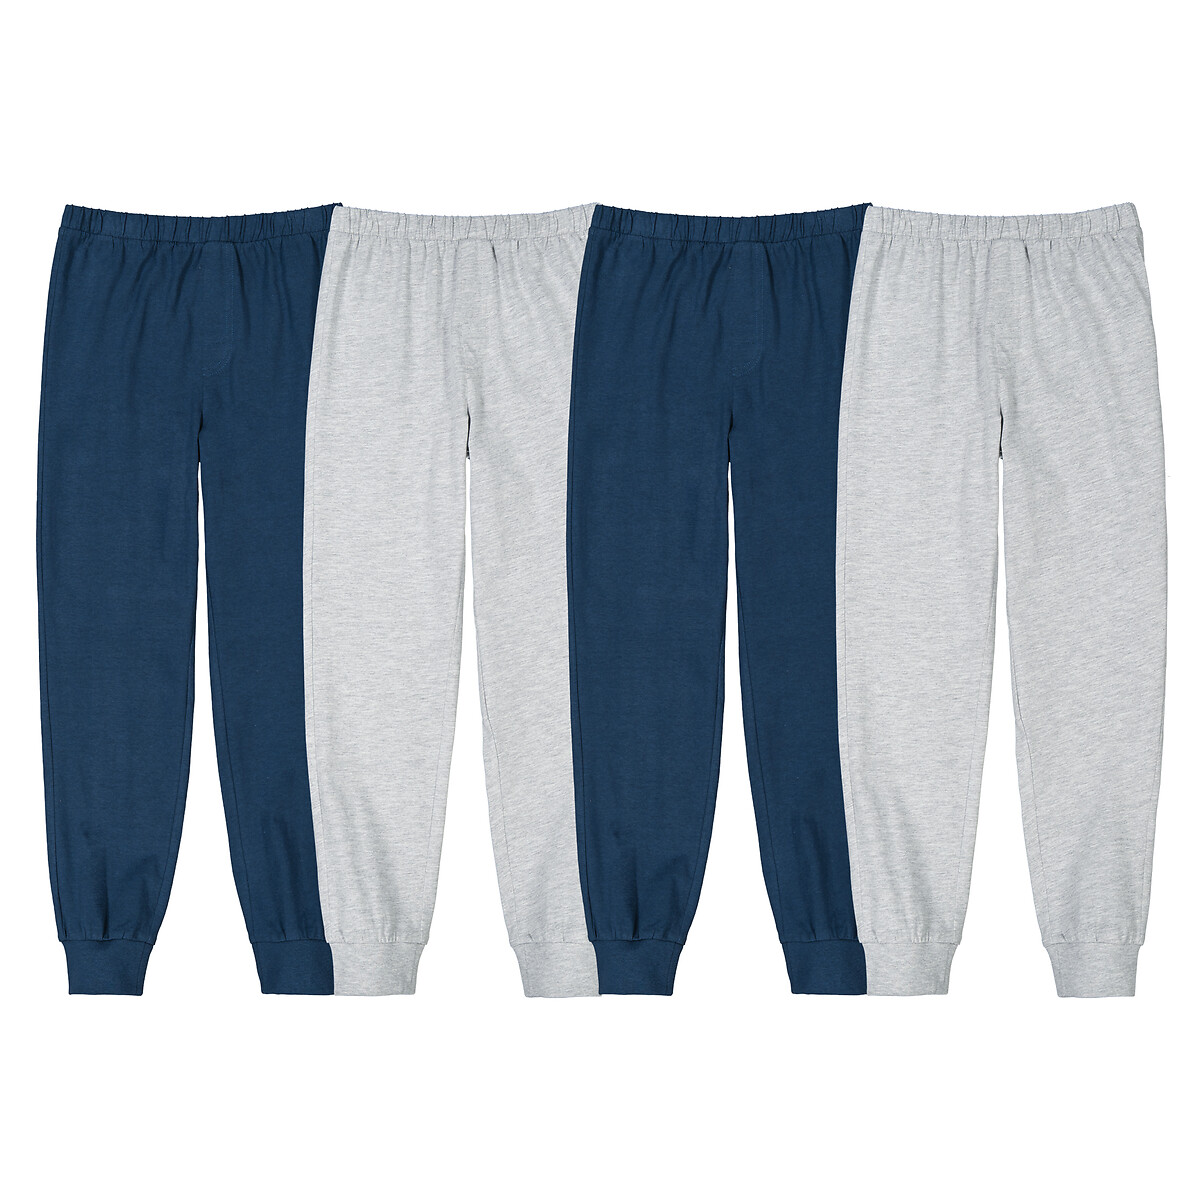 Комплект из четырех брюк пижамных из джерси  16 лет - 162 см синий LaRedoute, размер 16 лет - 162 см